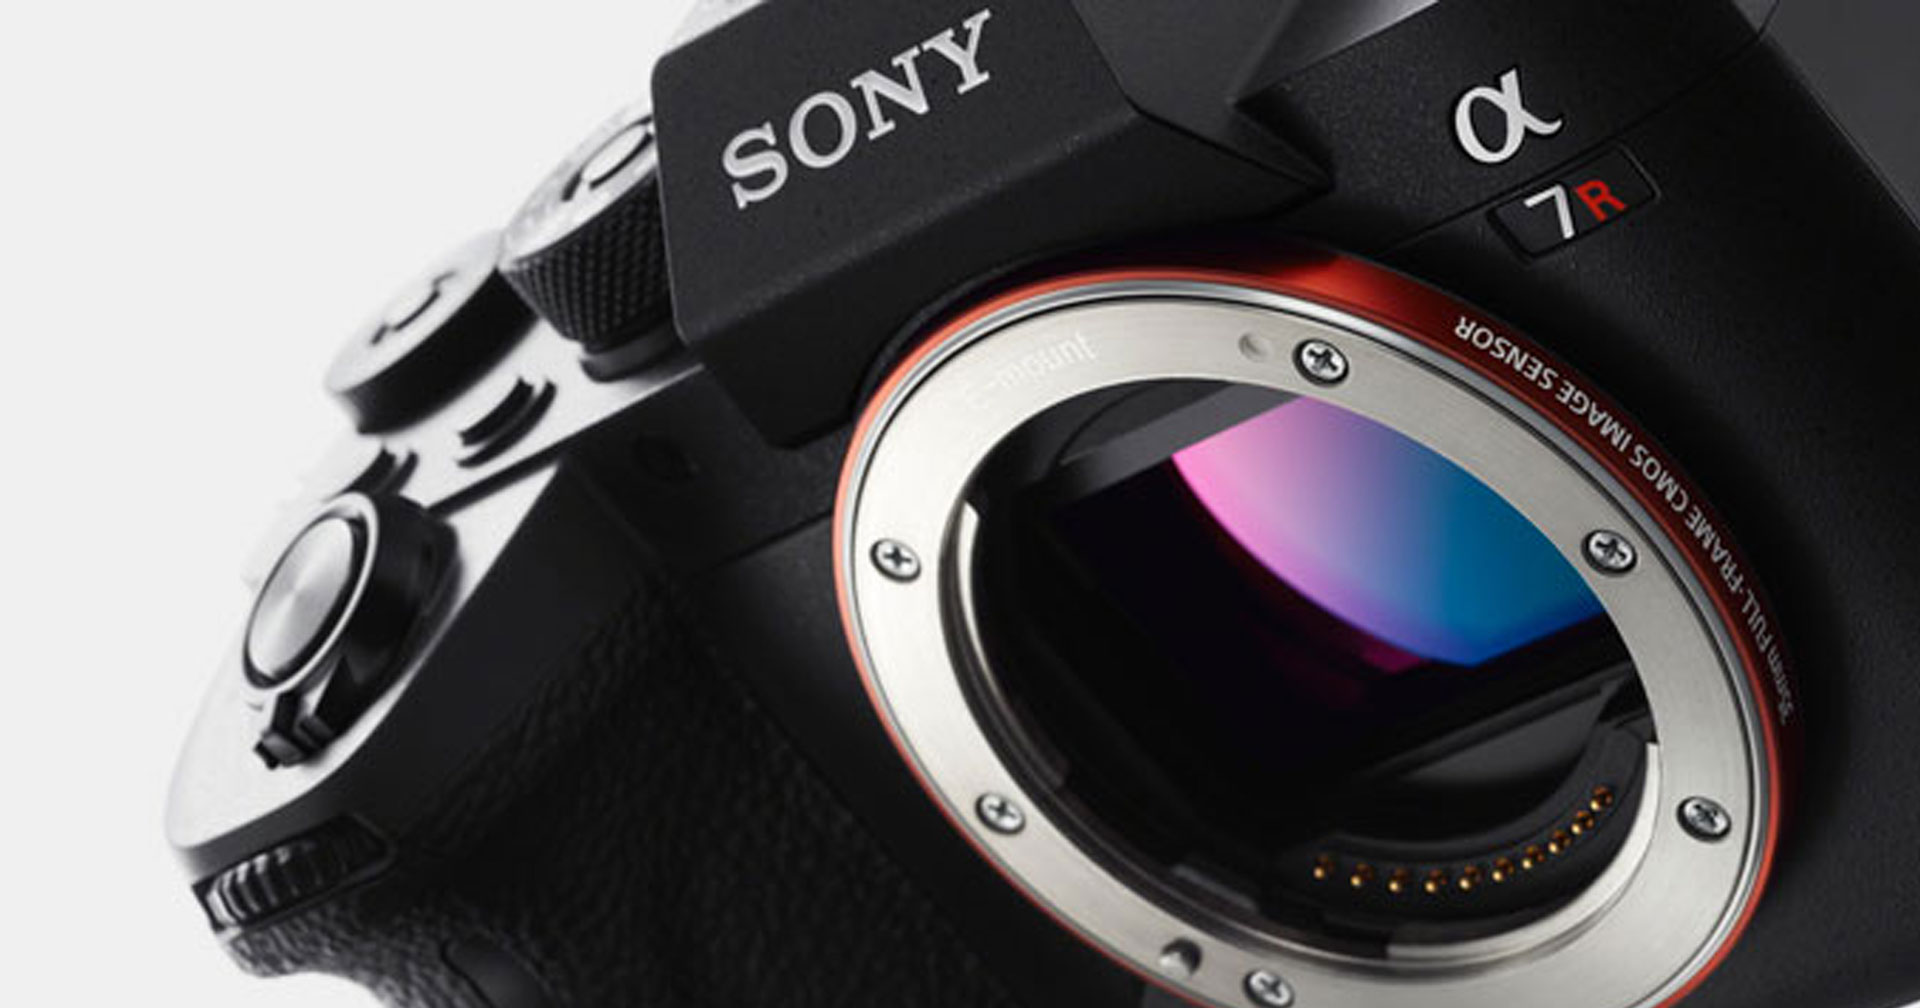 Sony กล่าว สถานการณ์ชิปขาดตลาดรุนแรงกว่าที่คาดเอาไว้ กระทบการผลิตกล้องและเลนส์